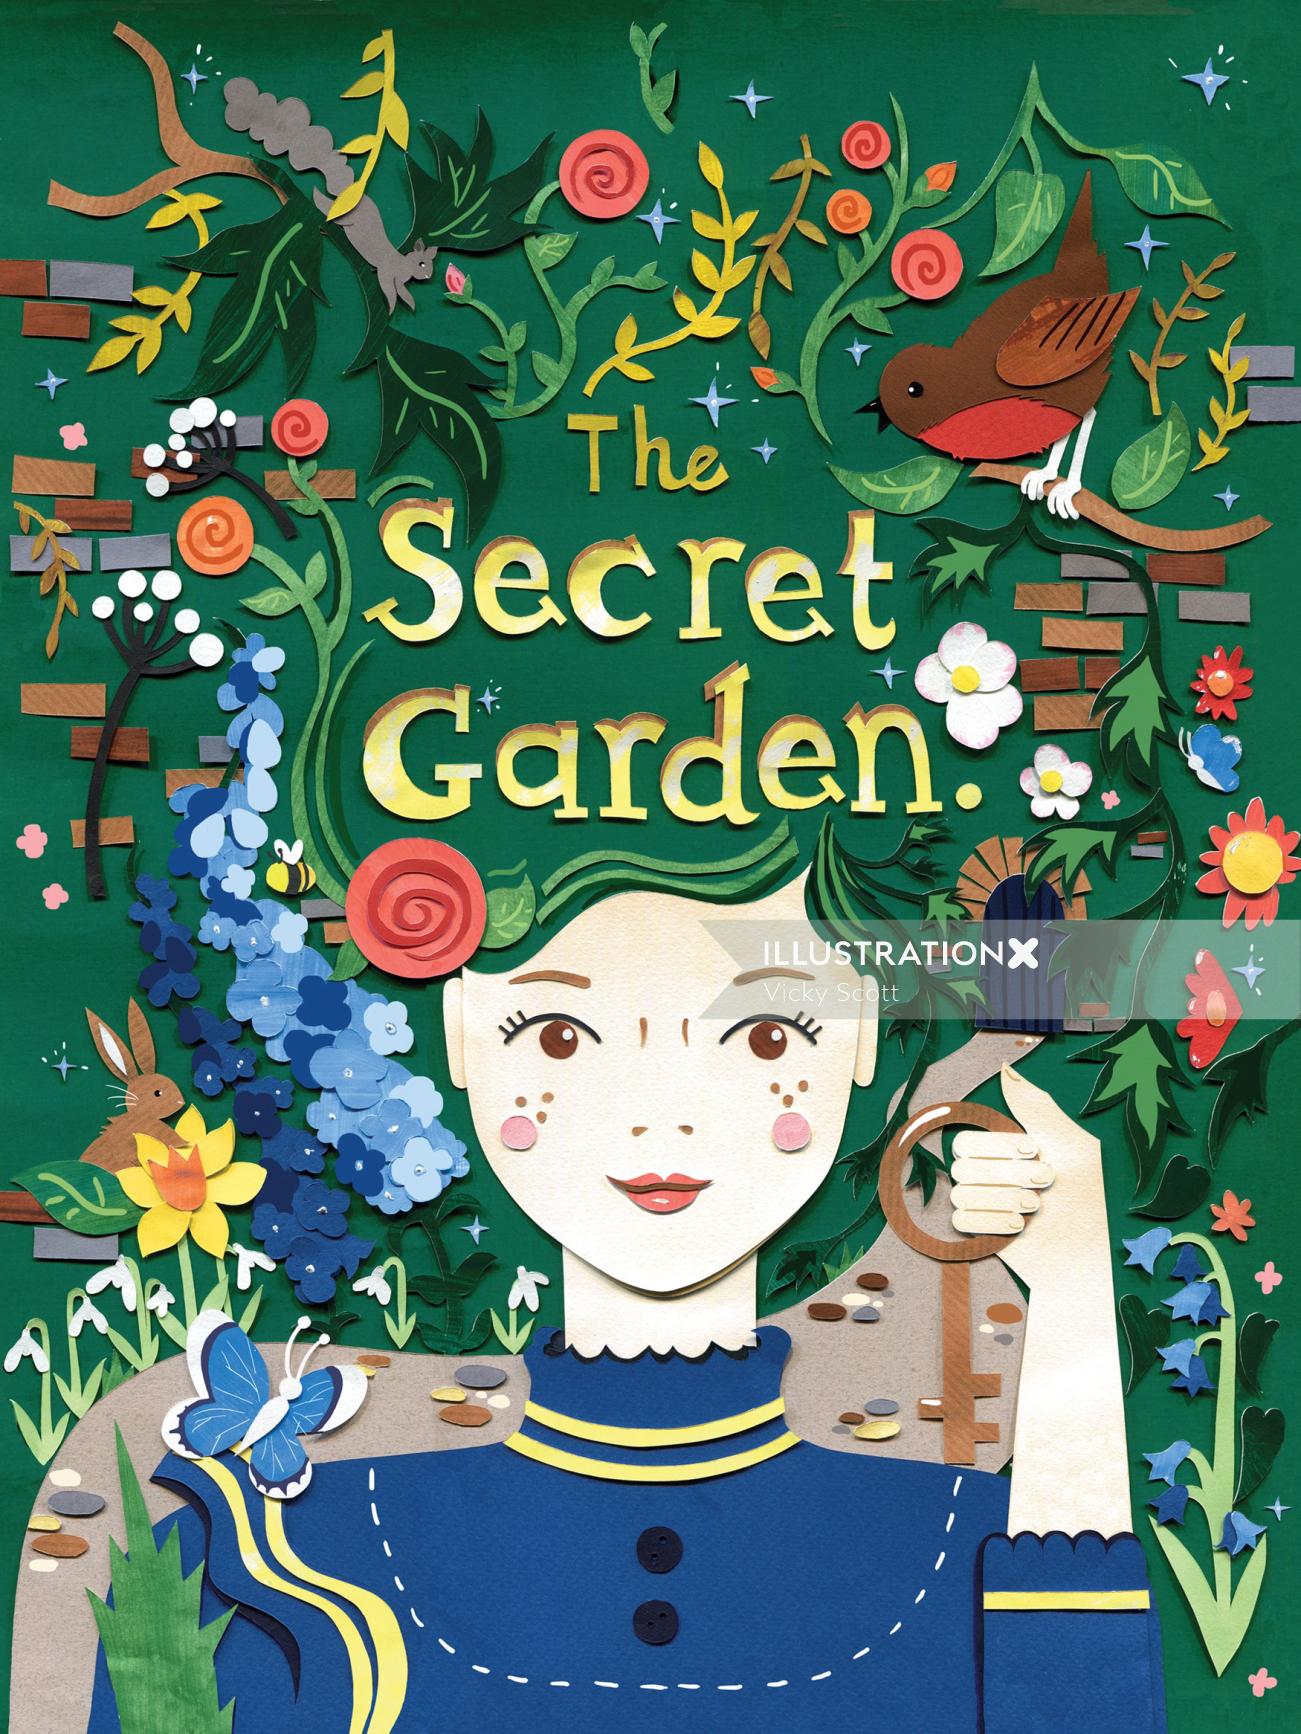 Book cover for the children's' classic novel, The Secret Garden